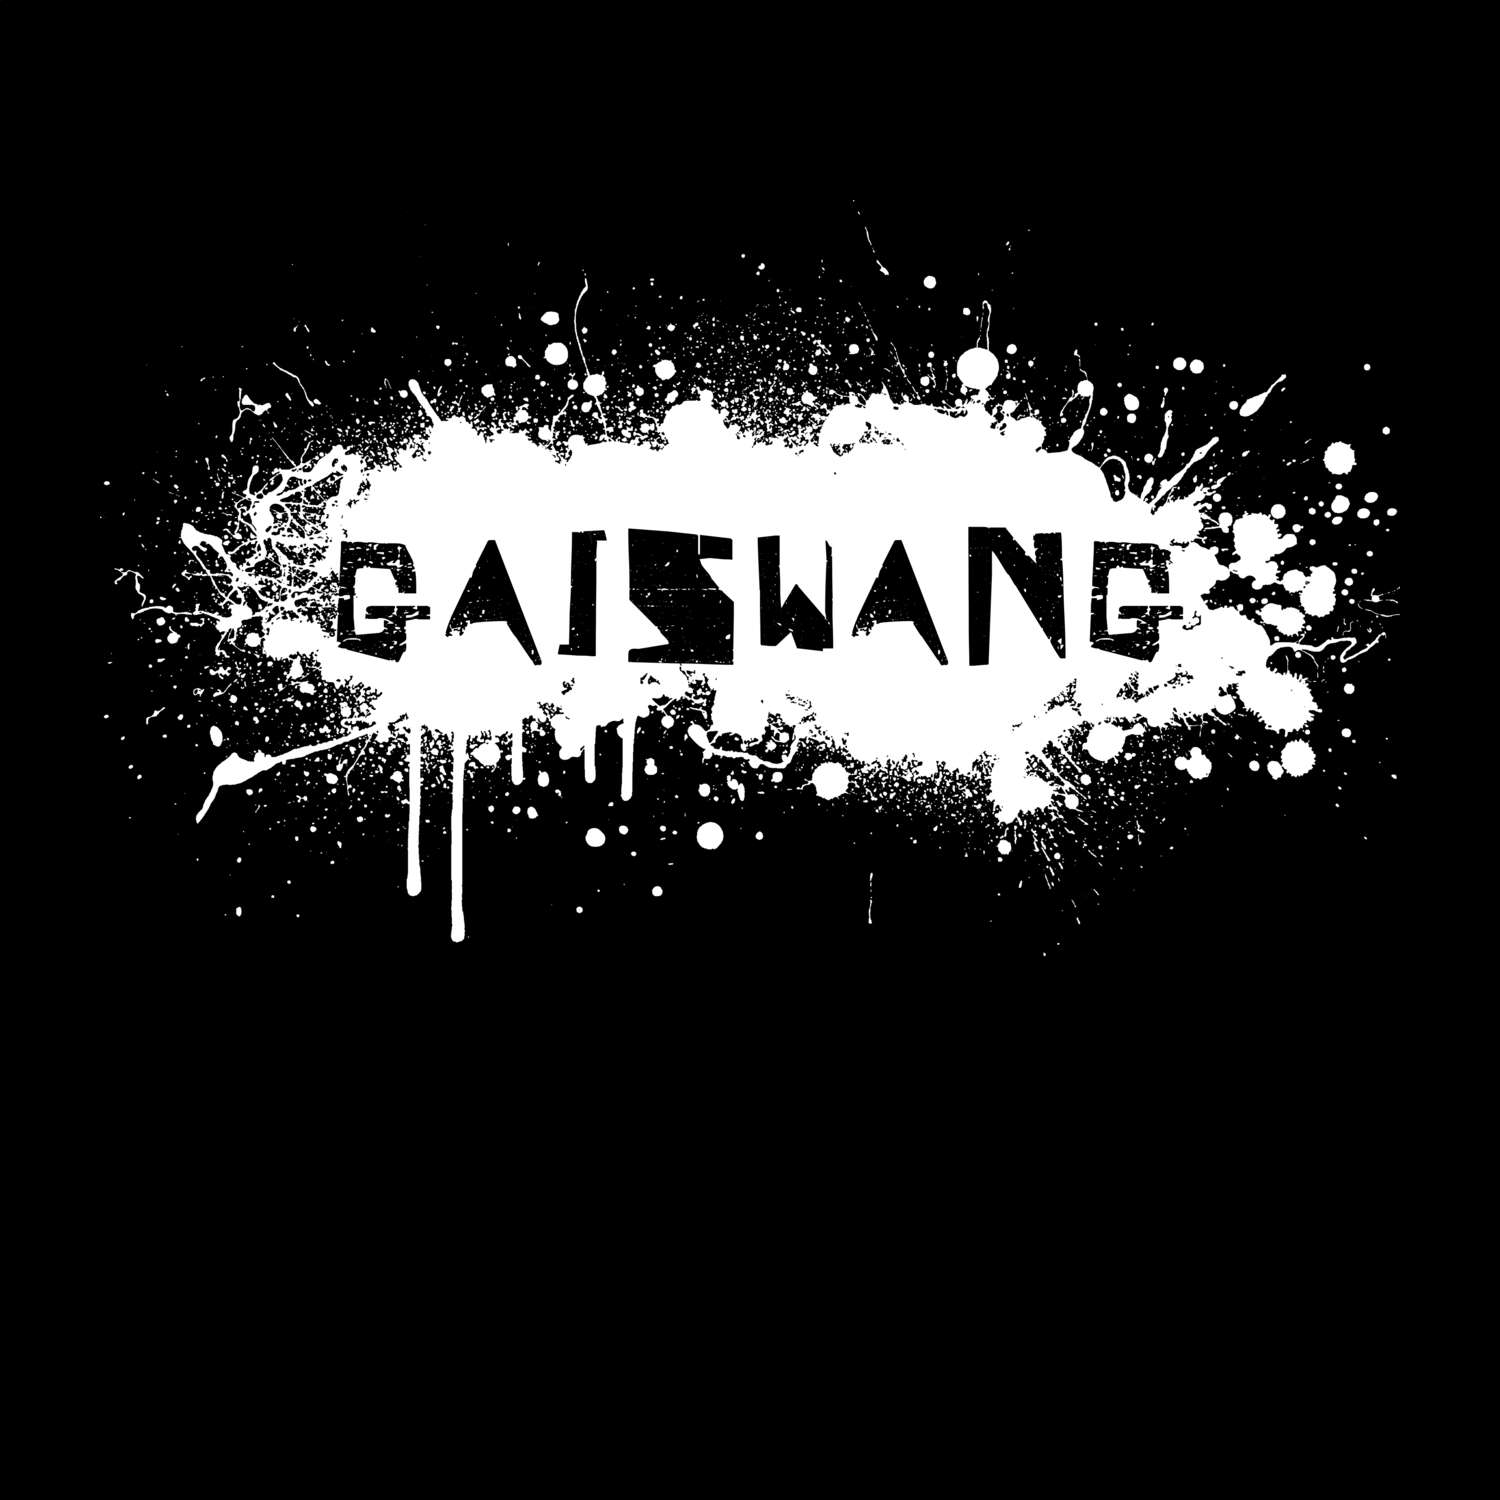 Gaiswang T-Shirt »Paint Splash Punk«